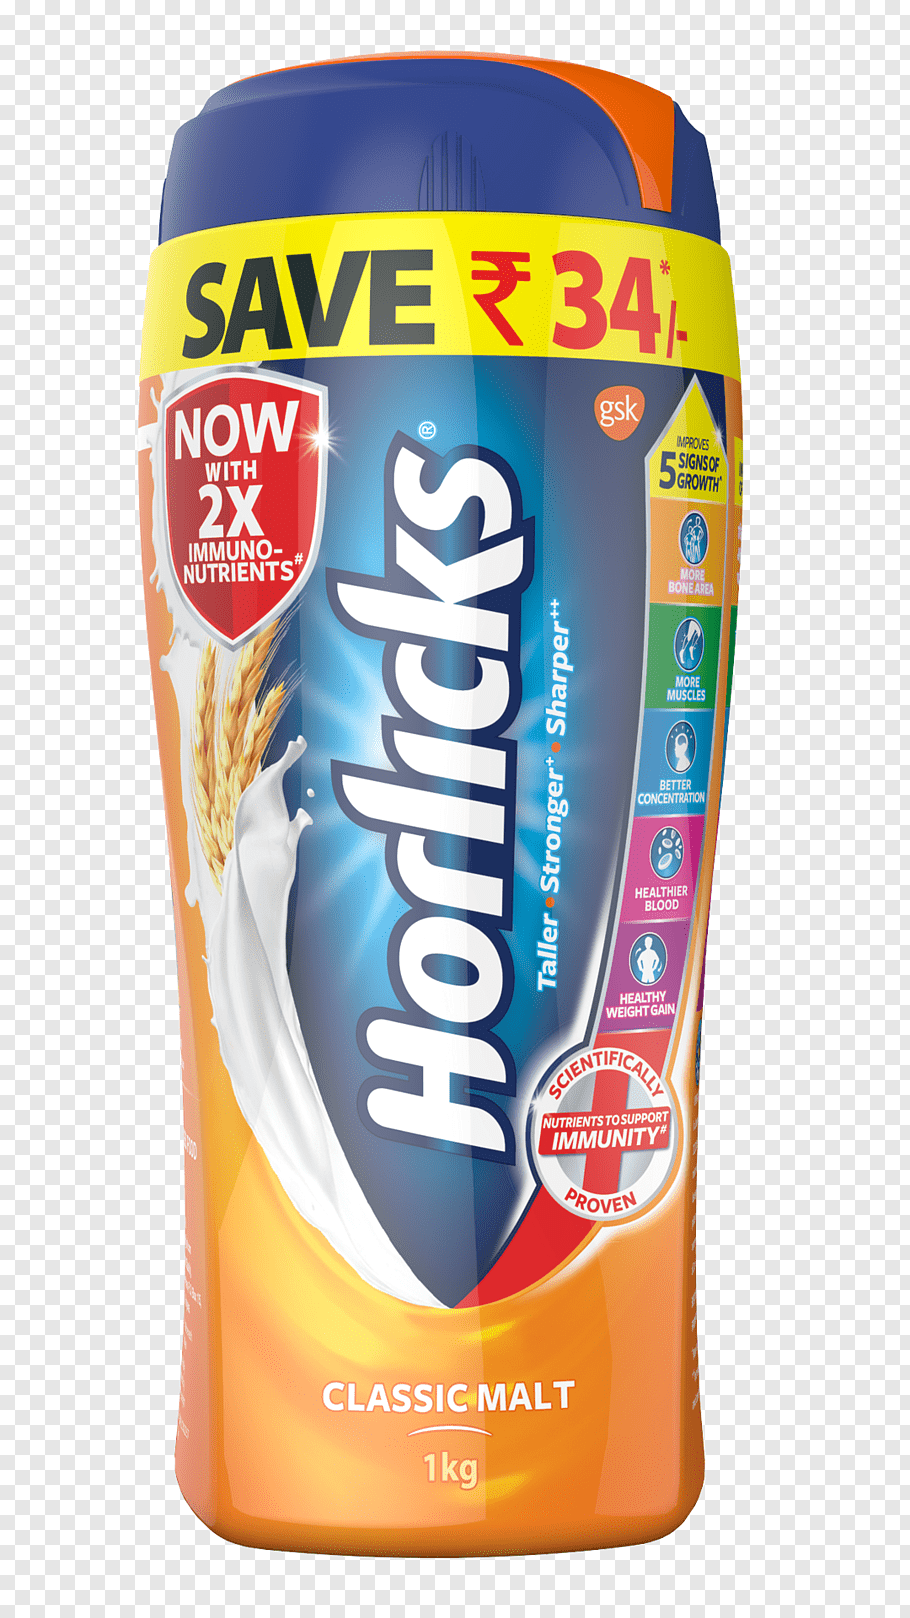 Horlicks Malt Drink Nutrition Facts